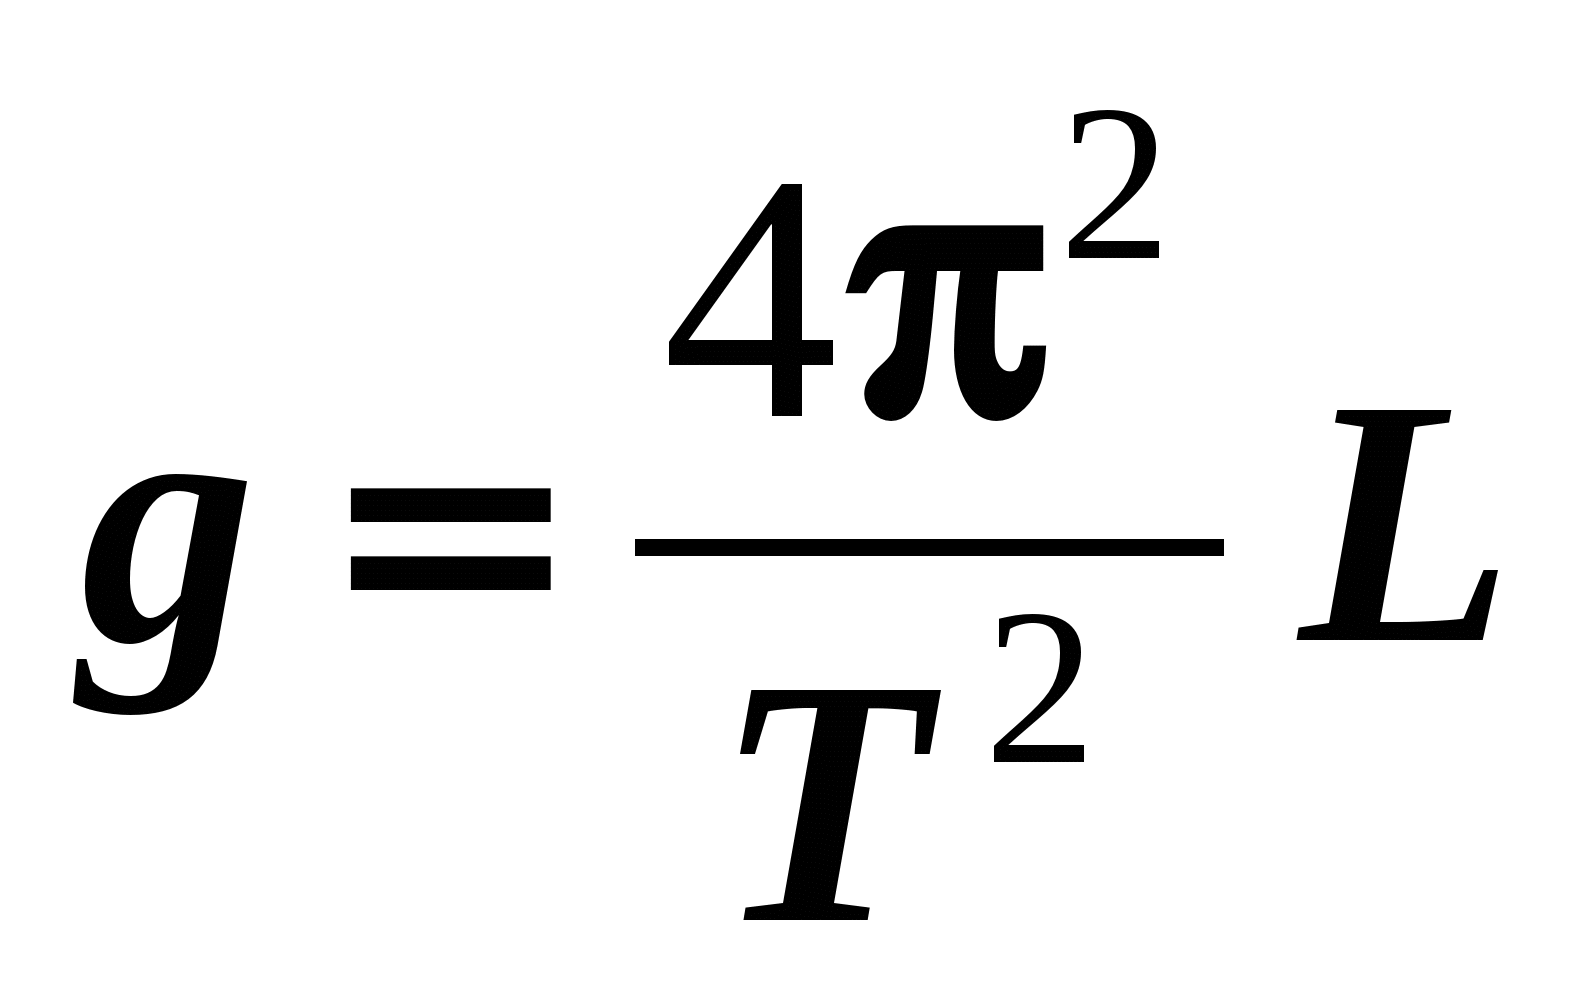 Формула снизу. Формула t 2п корень из l/g. G 4pi 2 l/t 2. T=корень l2/g. T=2п*e/g.